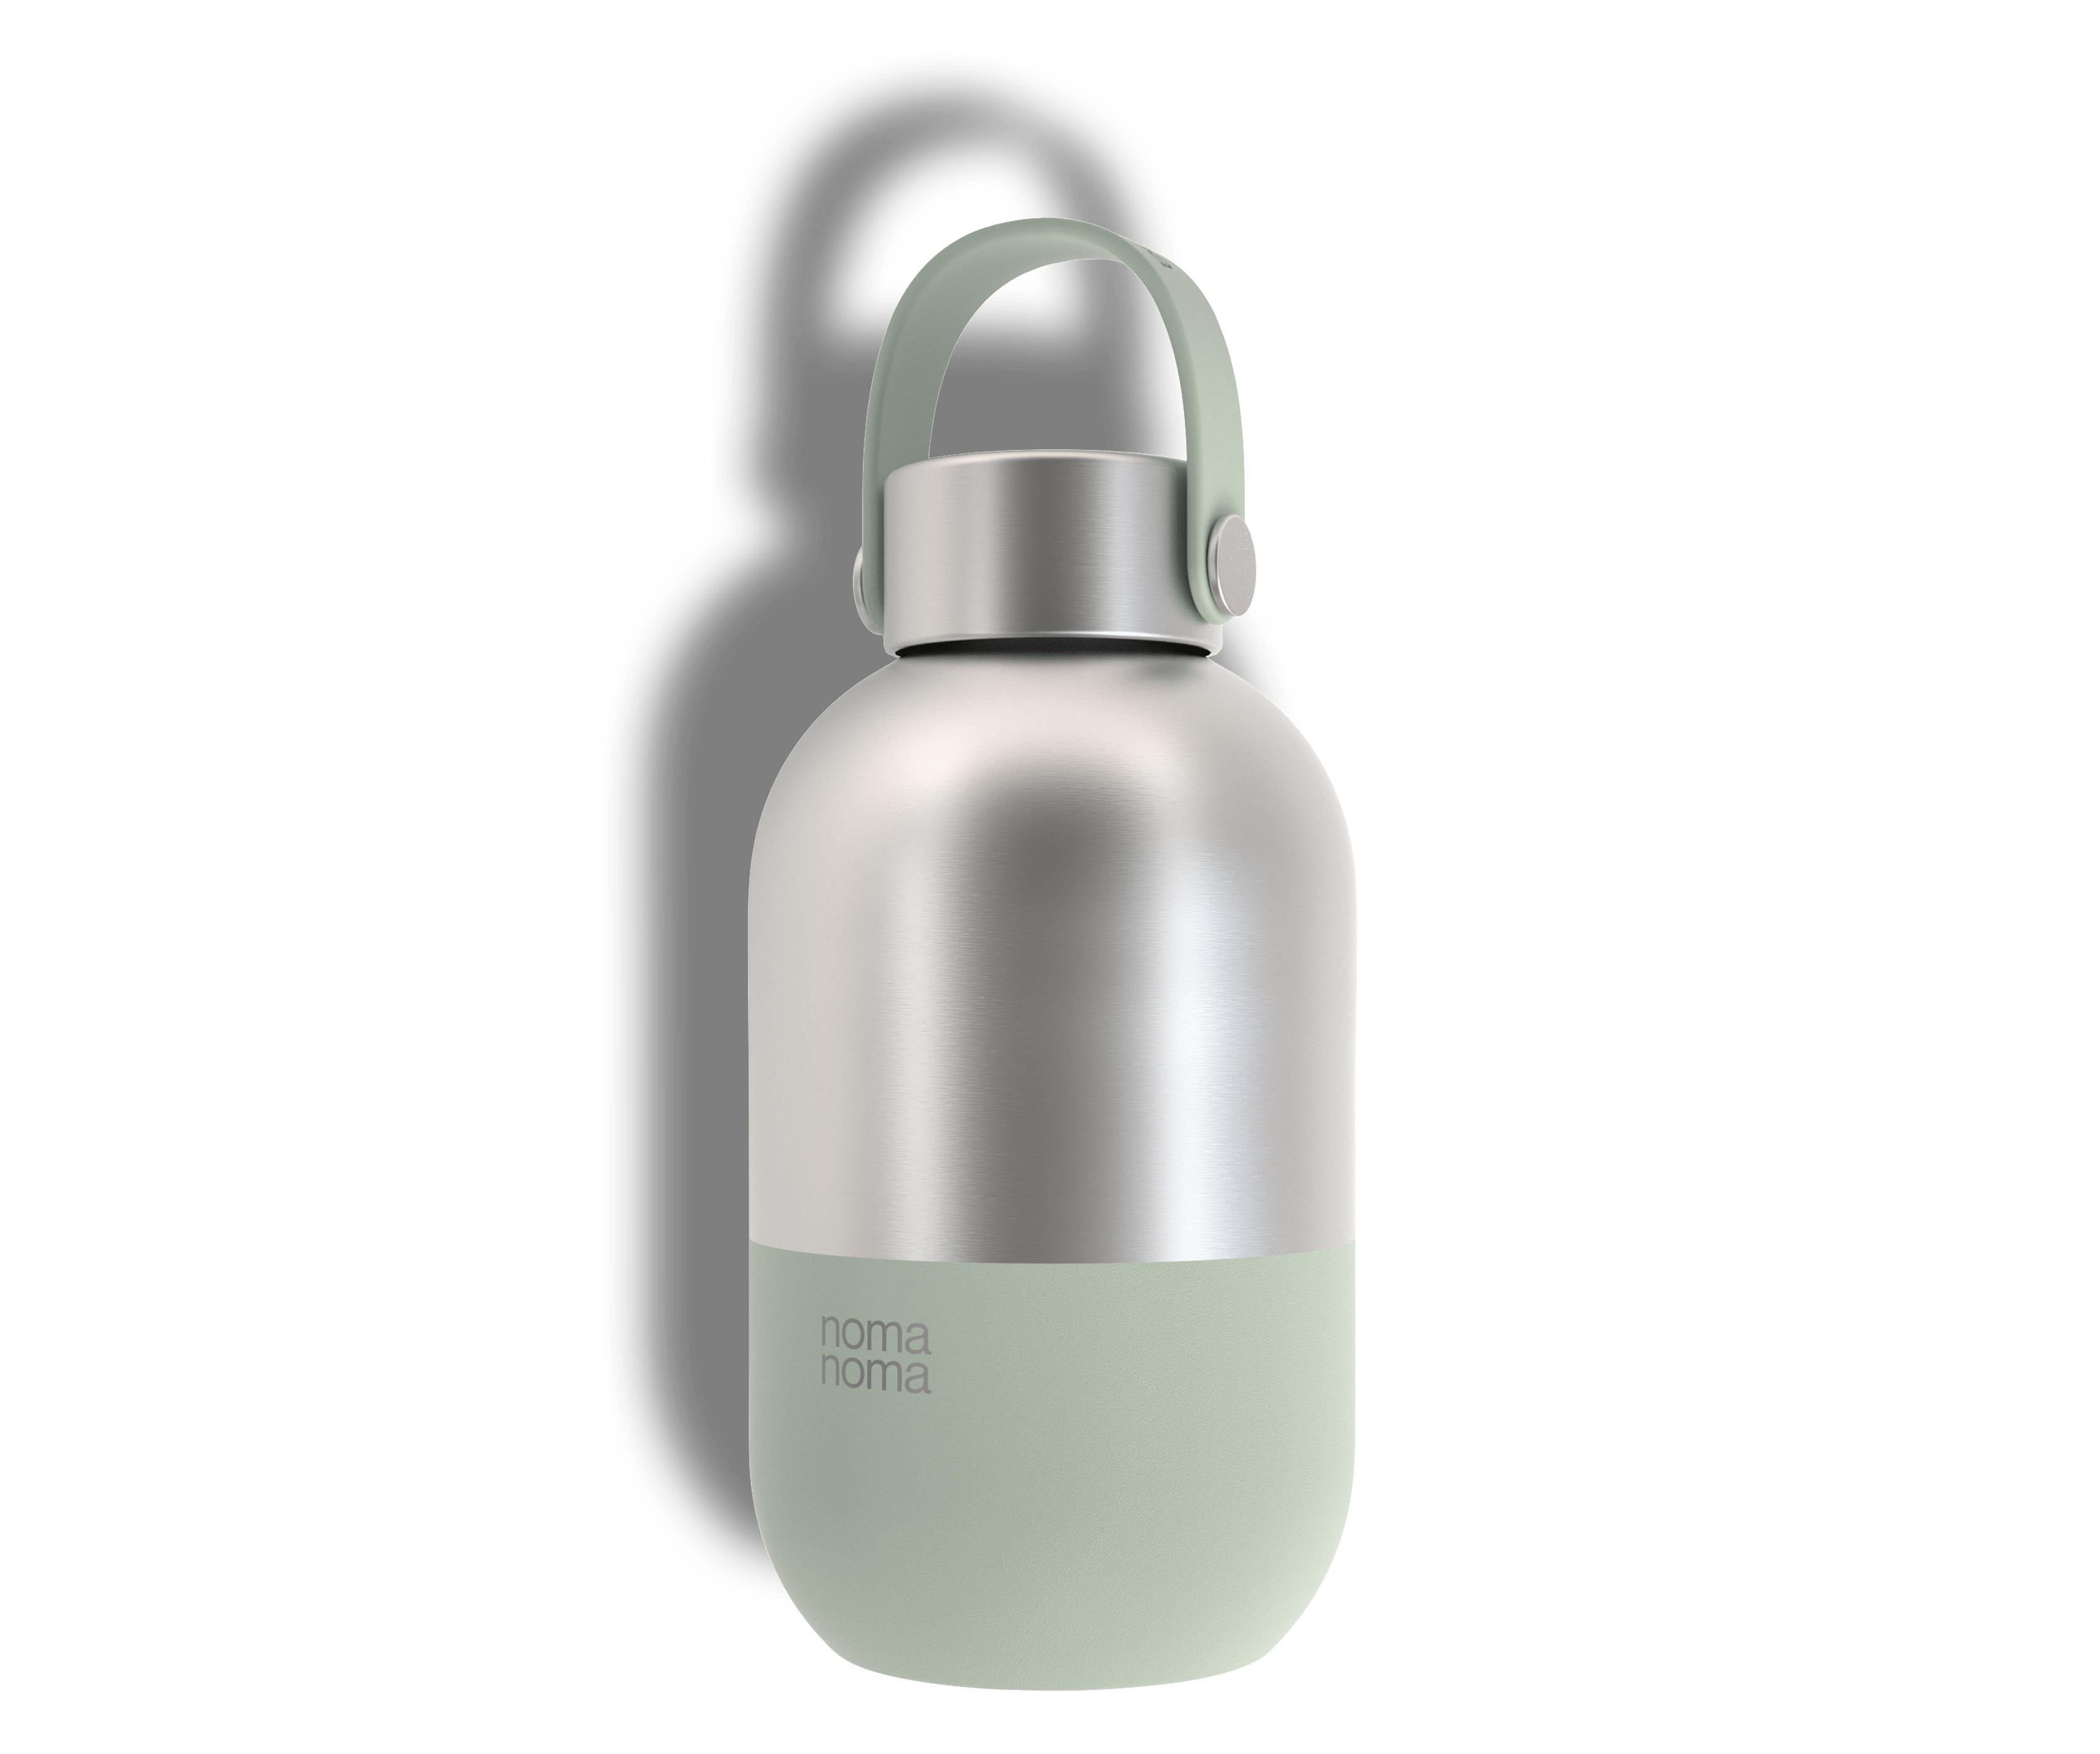 Die noma noma 0,5 l Wasserflasche in hellgrün